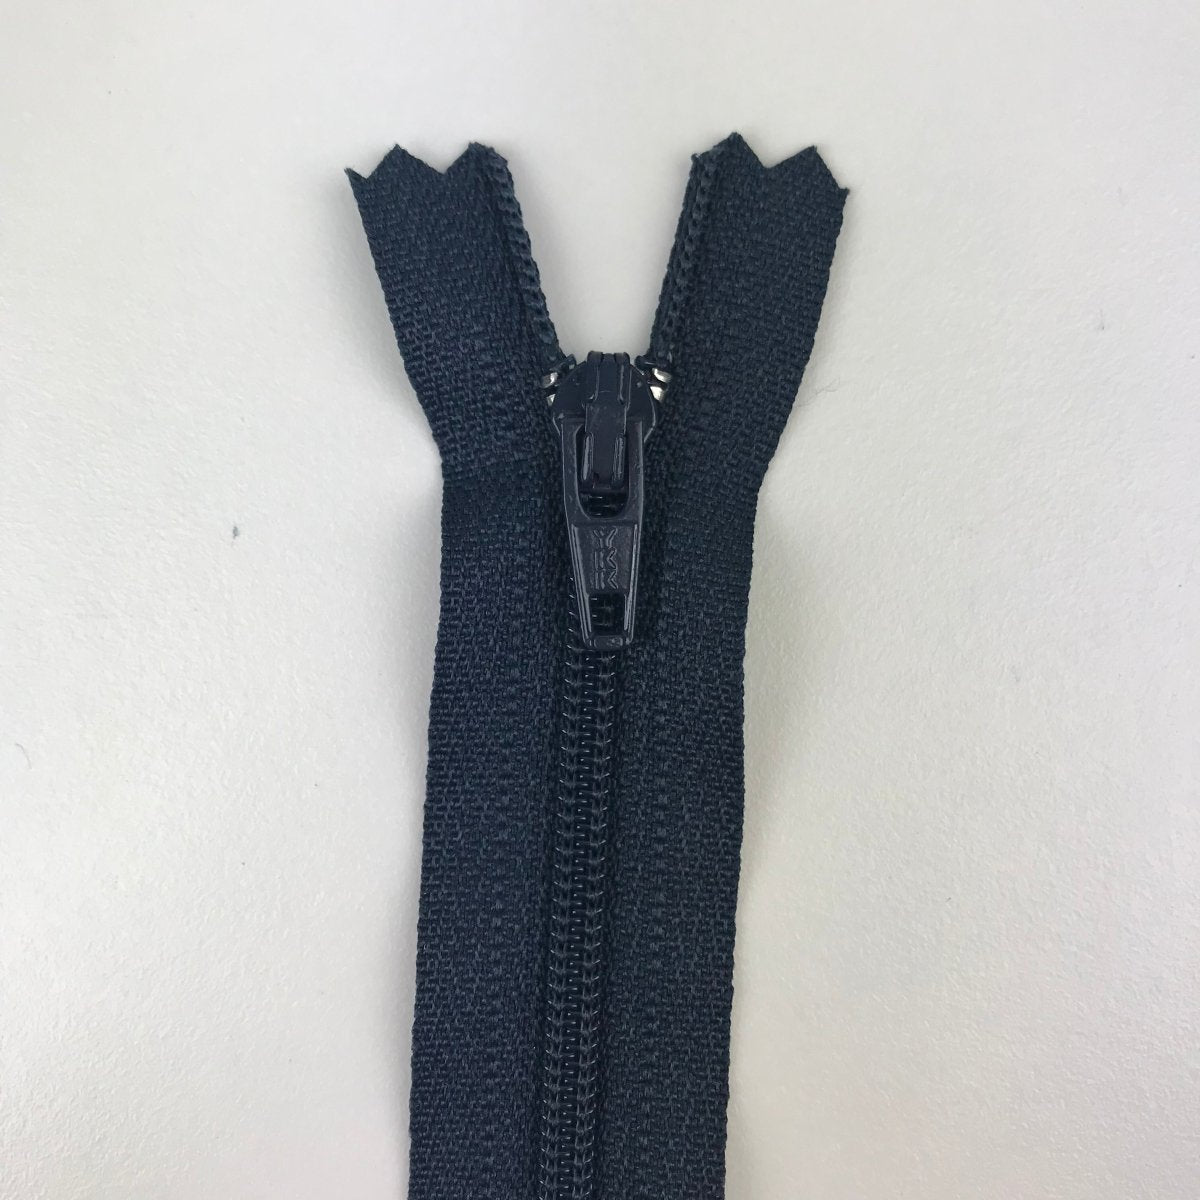 YKK Zipper - Skirt and Dress - 30.5cm (12") - Sewing Gem